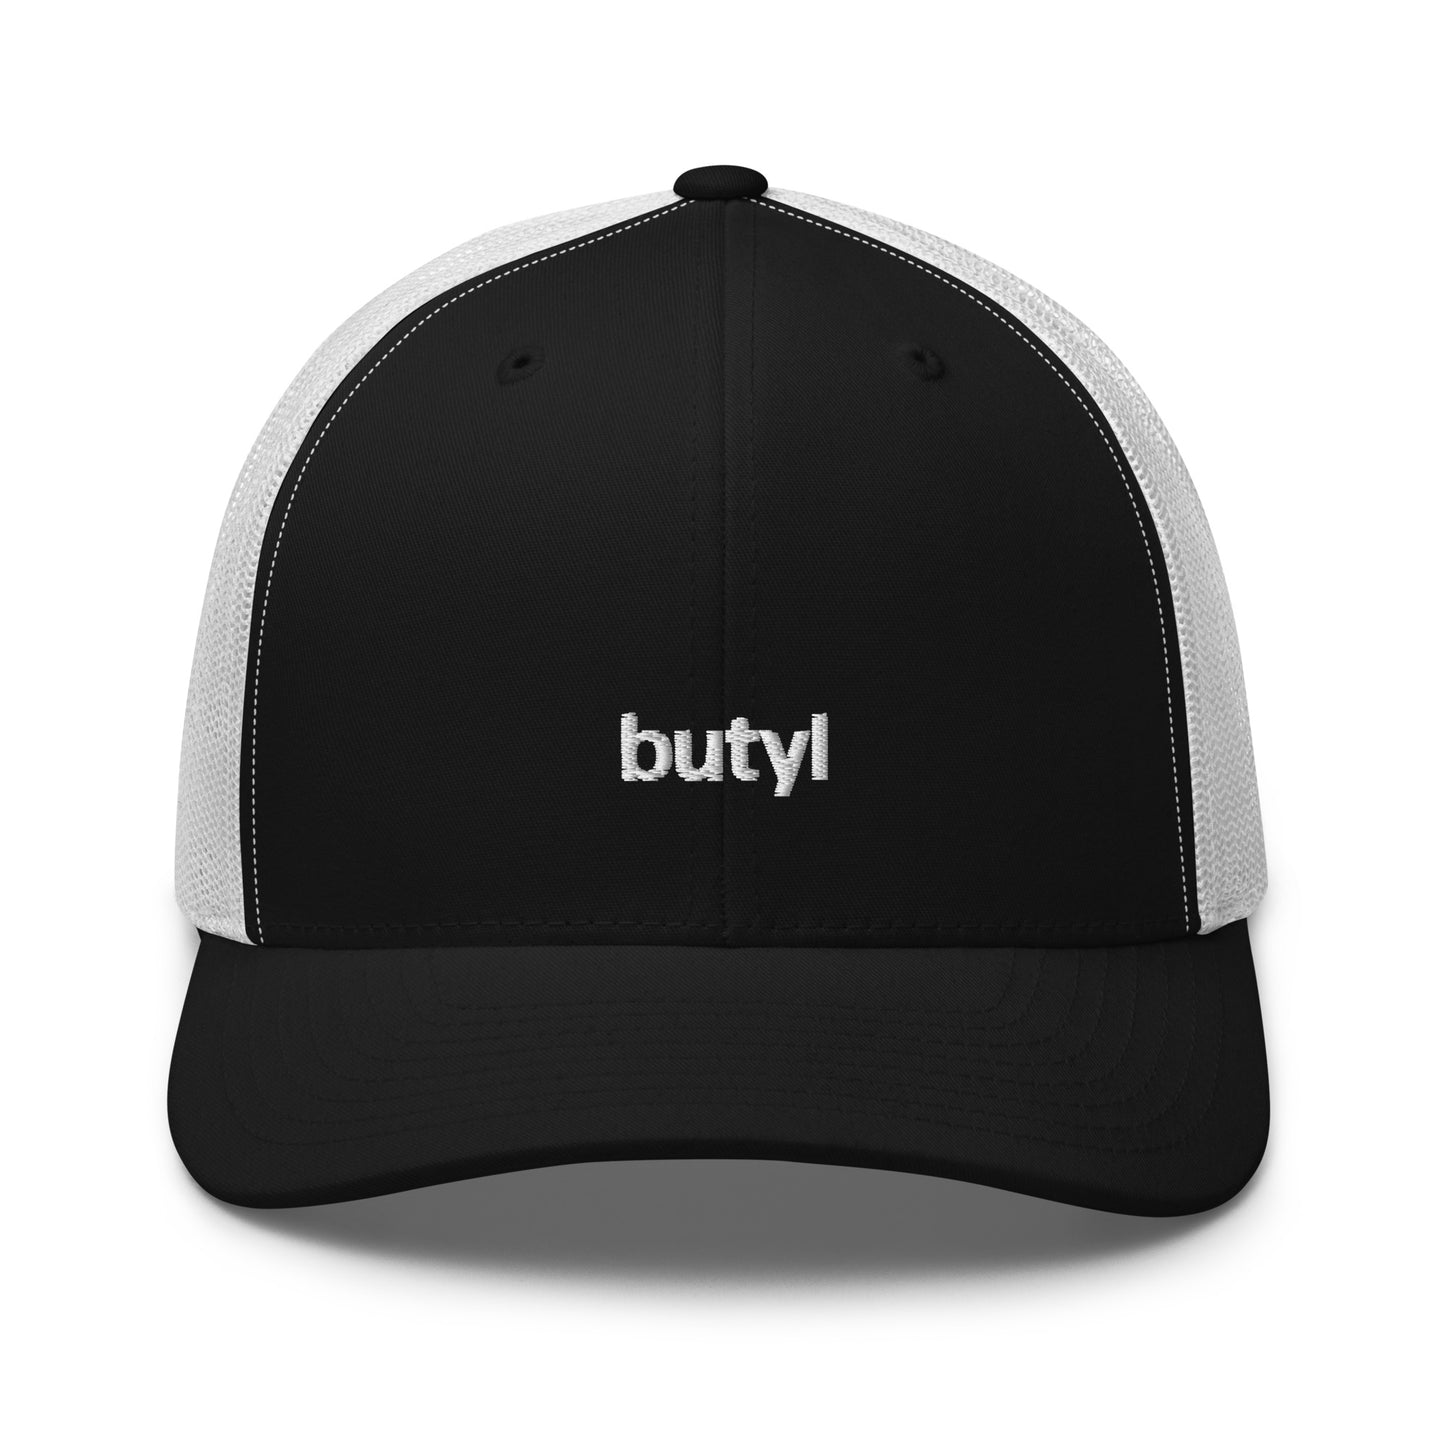 butyl | trucker hat